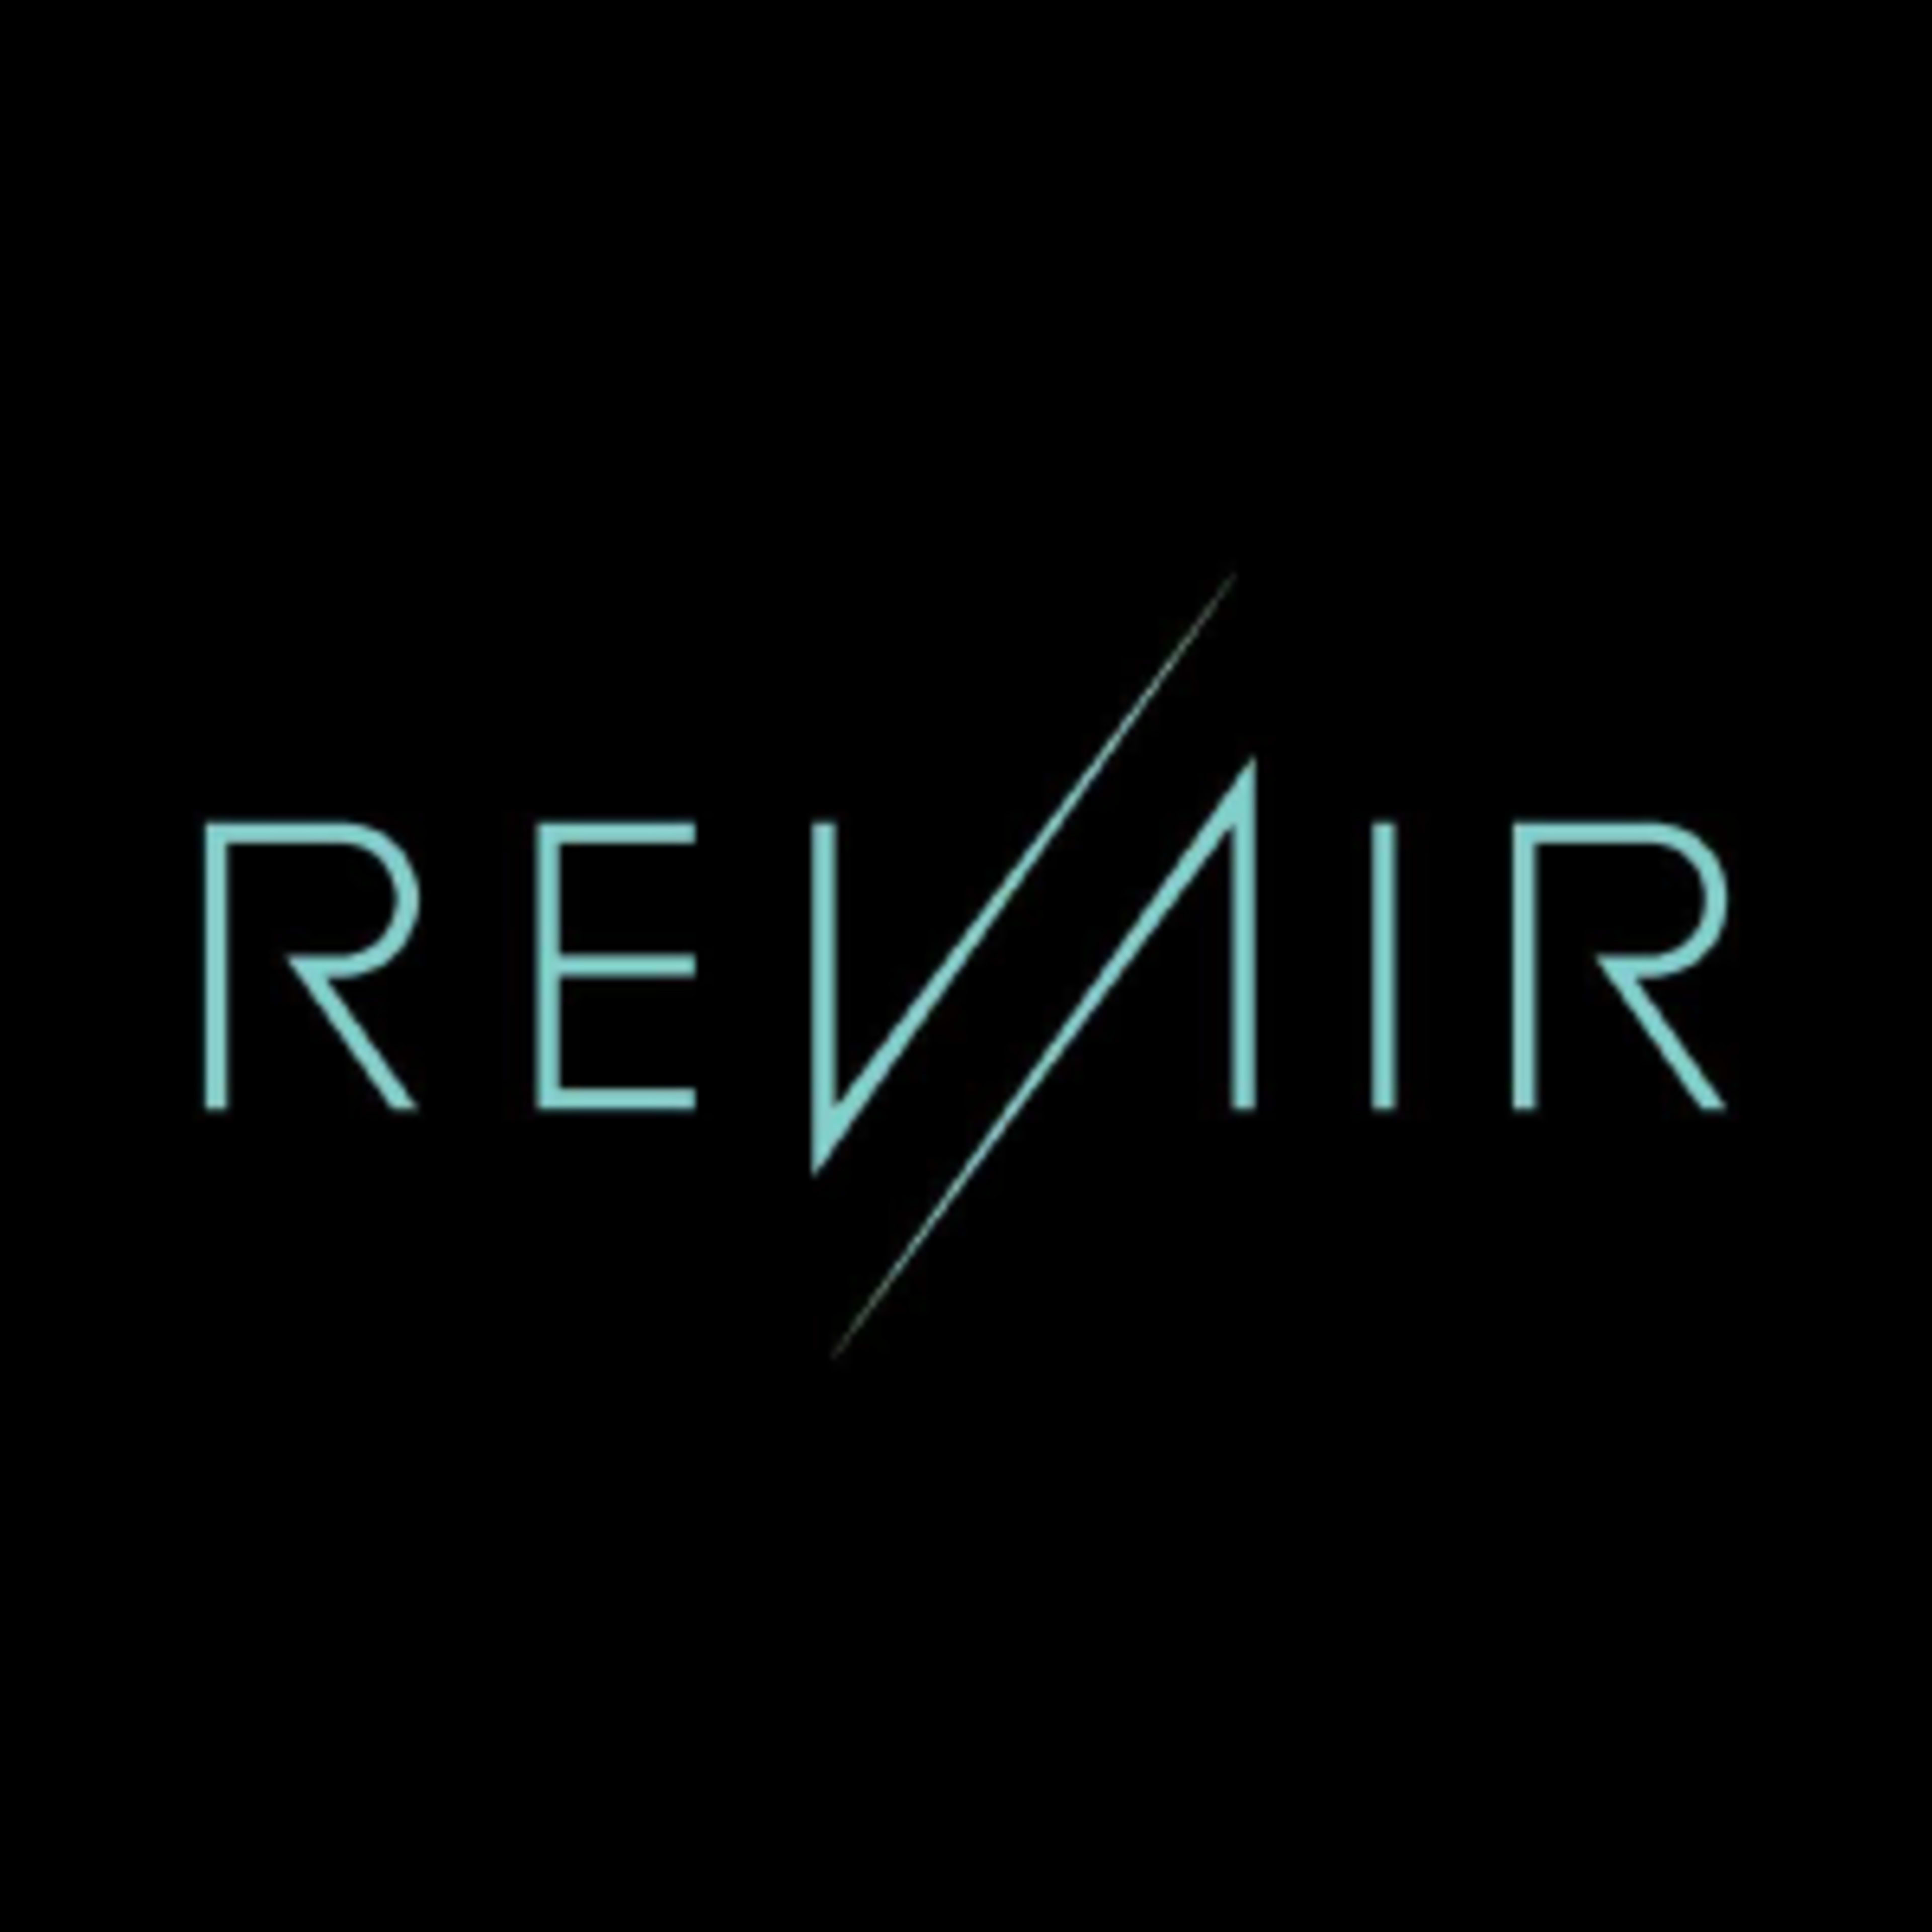 RevAir REVeler Code